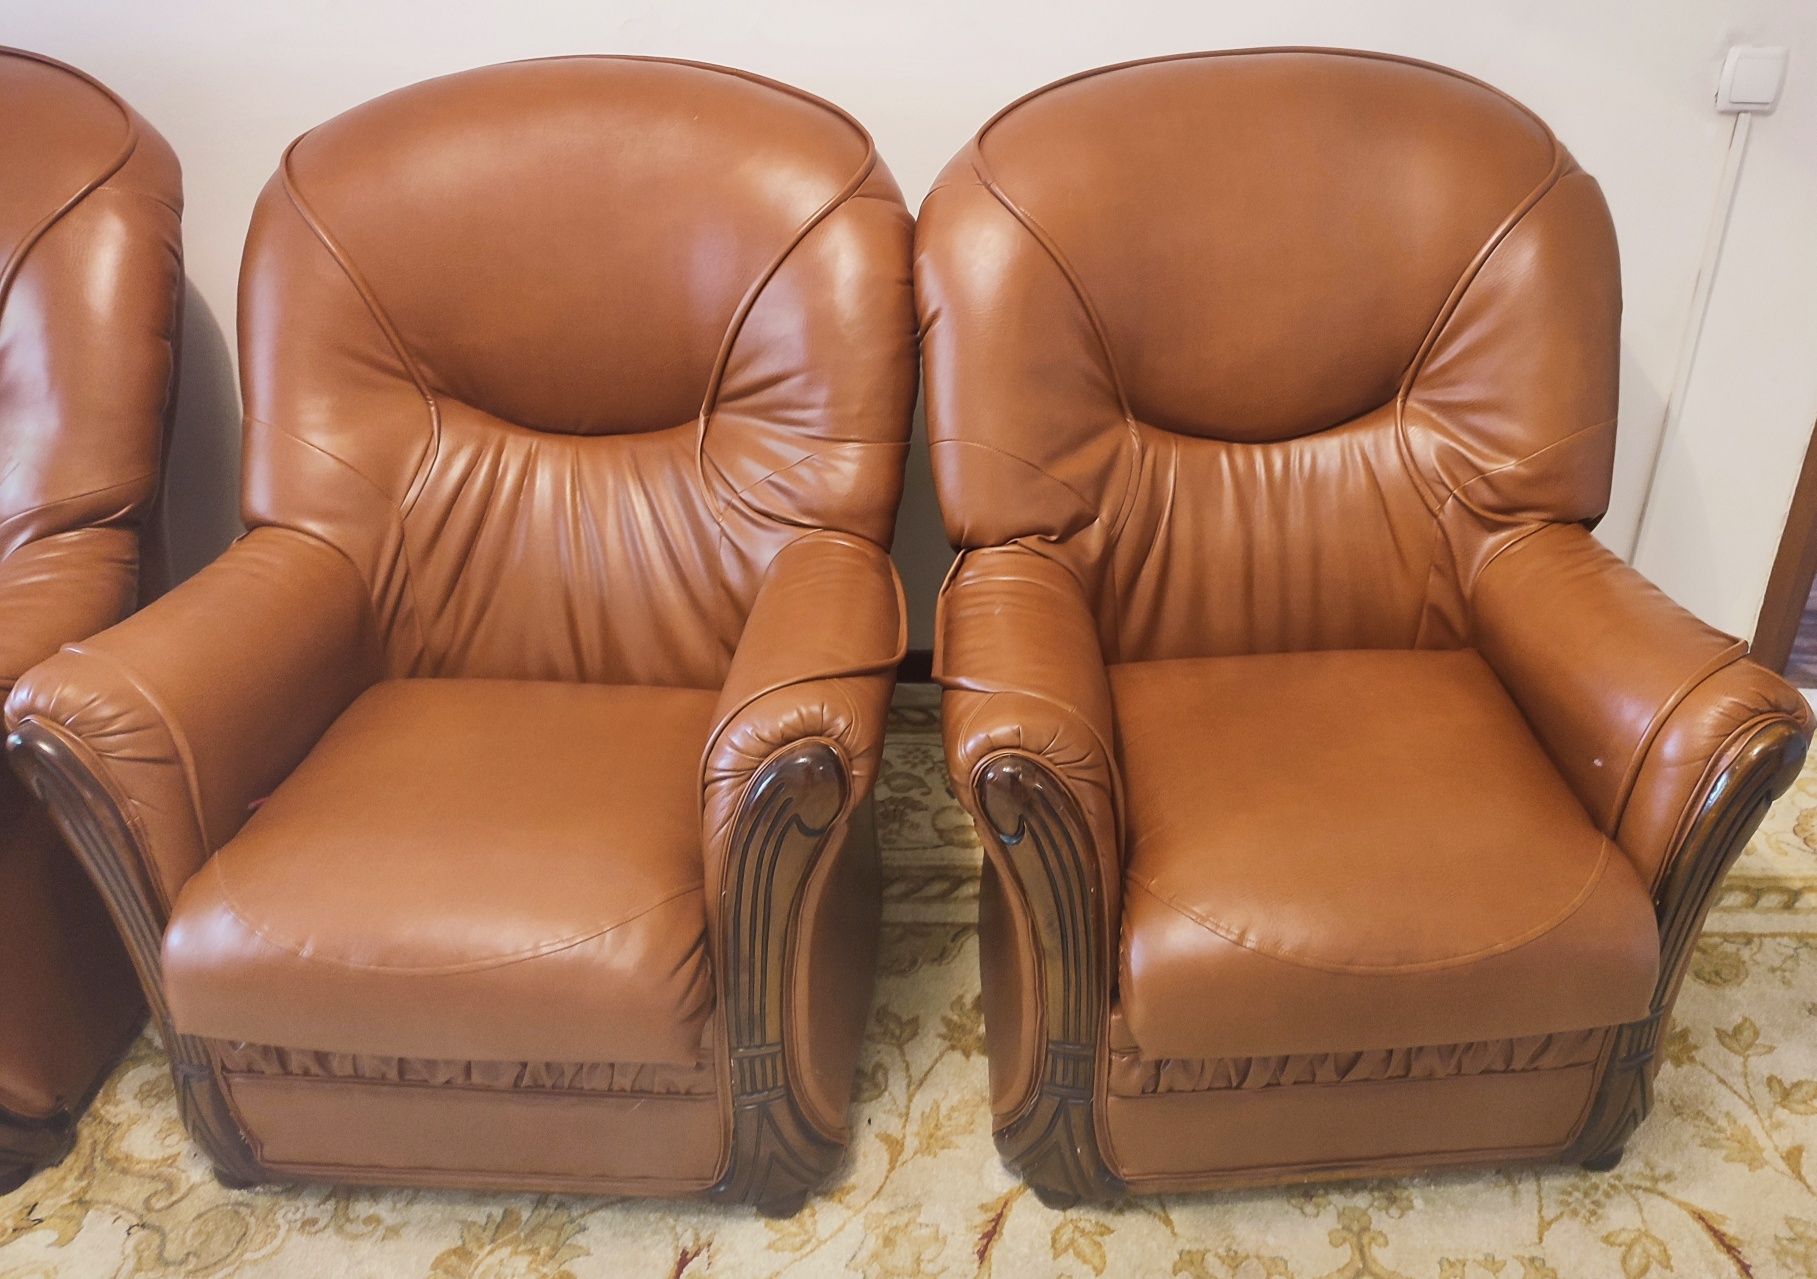 Раздвижной Кожанный диван с двумя креслаии в отличном состоянии, кожа